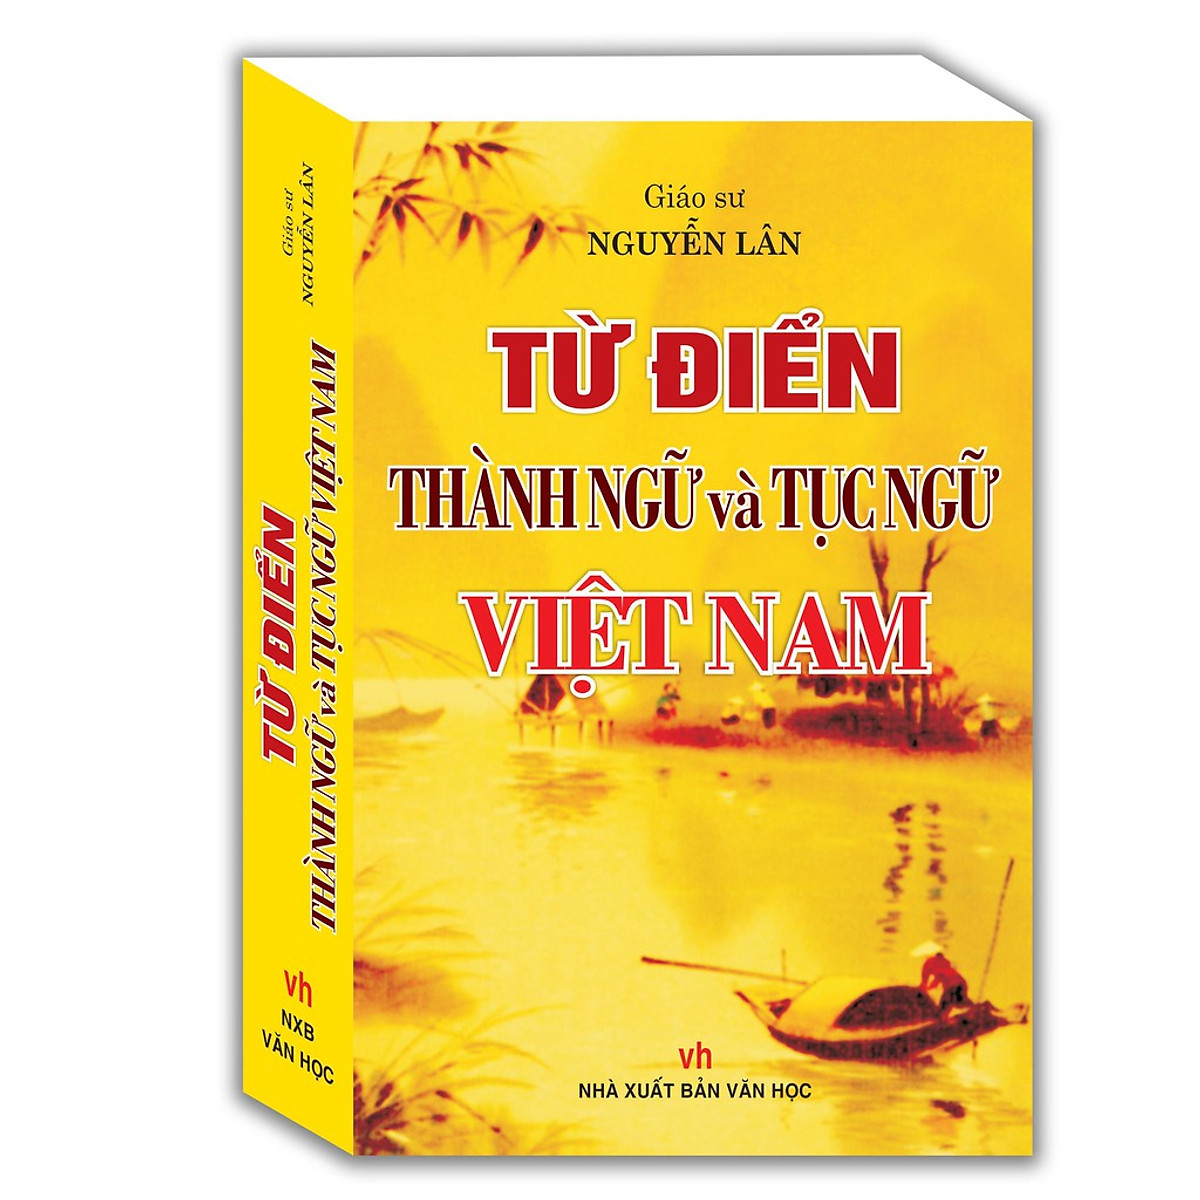 Combo Từ Điển Thành Ngữ Tục Ngữ (GS: Nguyễn Lân) + Từ điển Tiếng Việt Dành cho học sinh